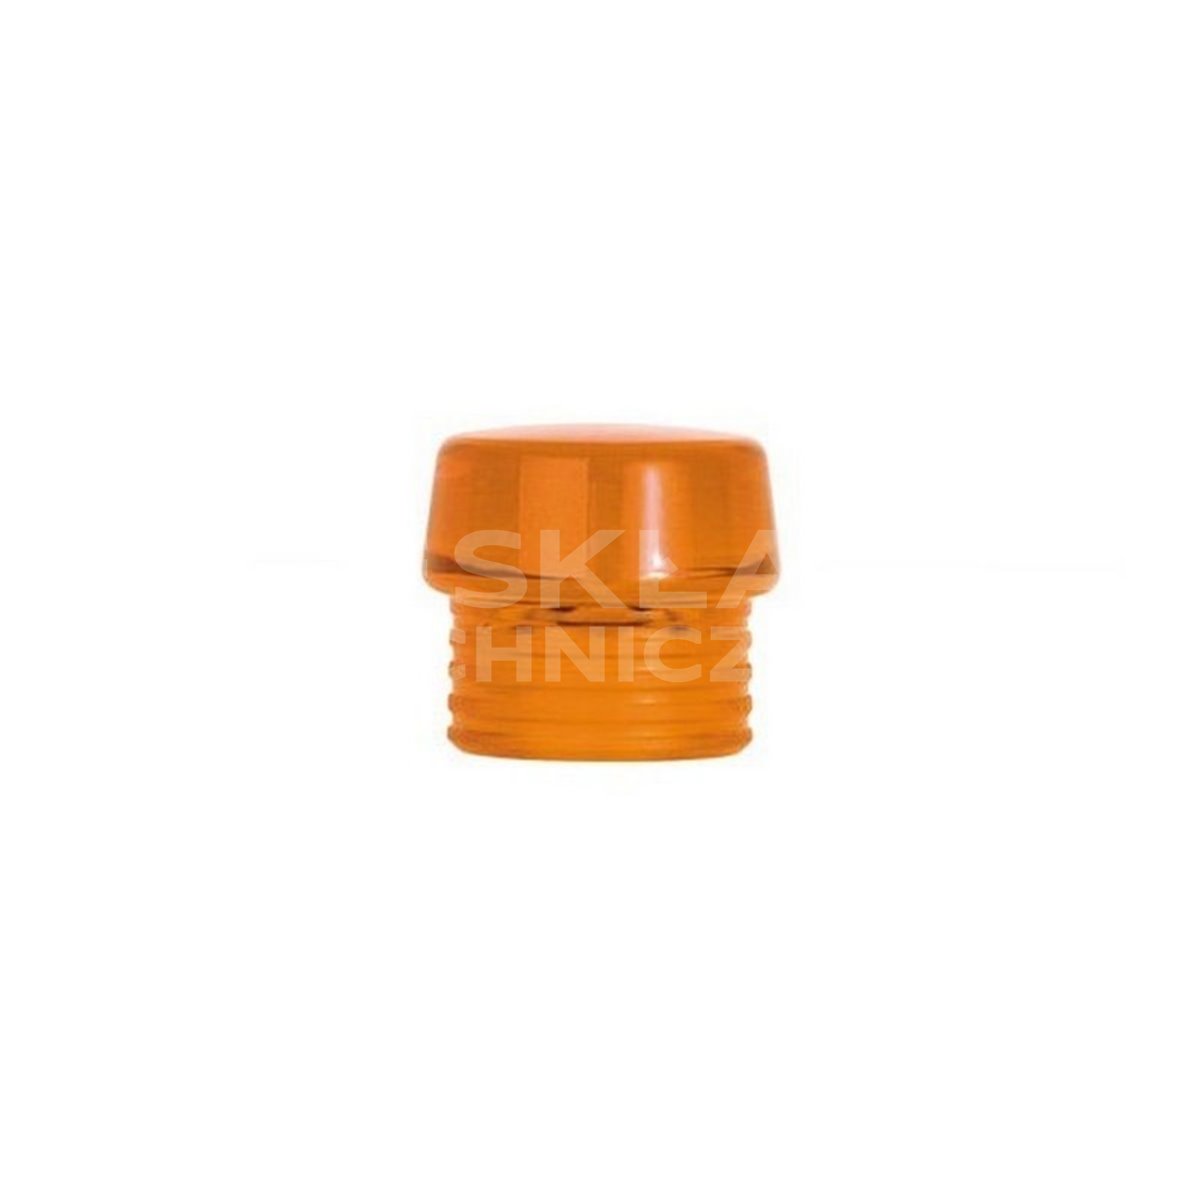 Transparent orange tip for Safety 831-8 hammer, 30mm Wiha 26615.